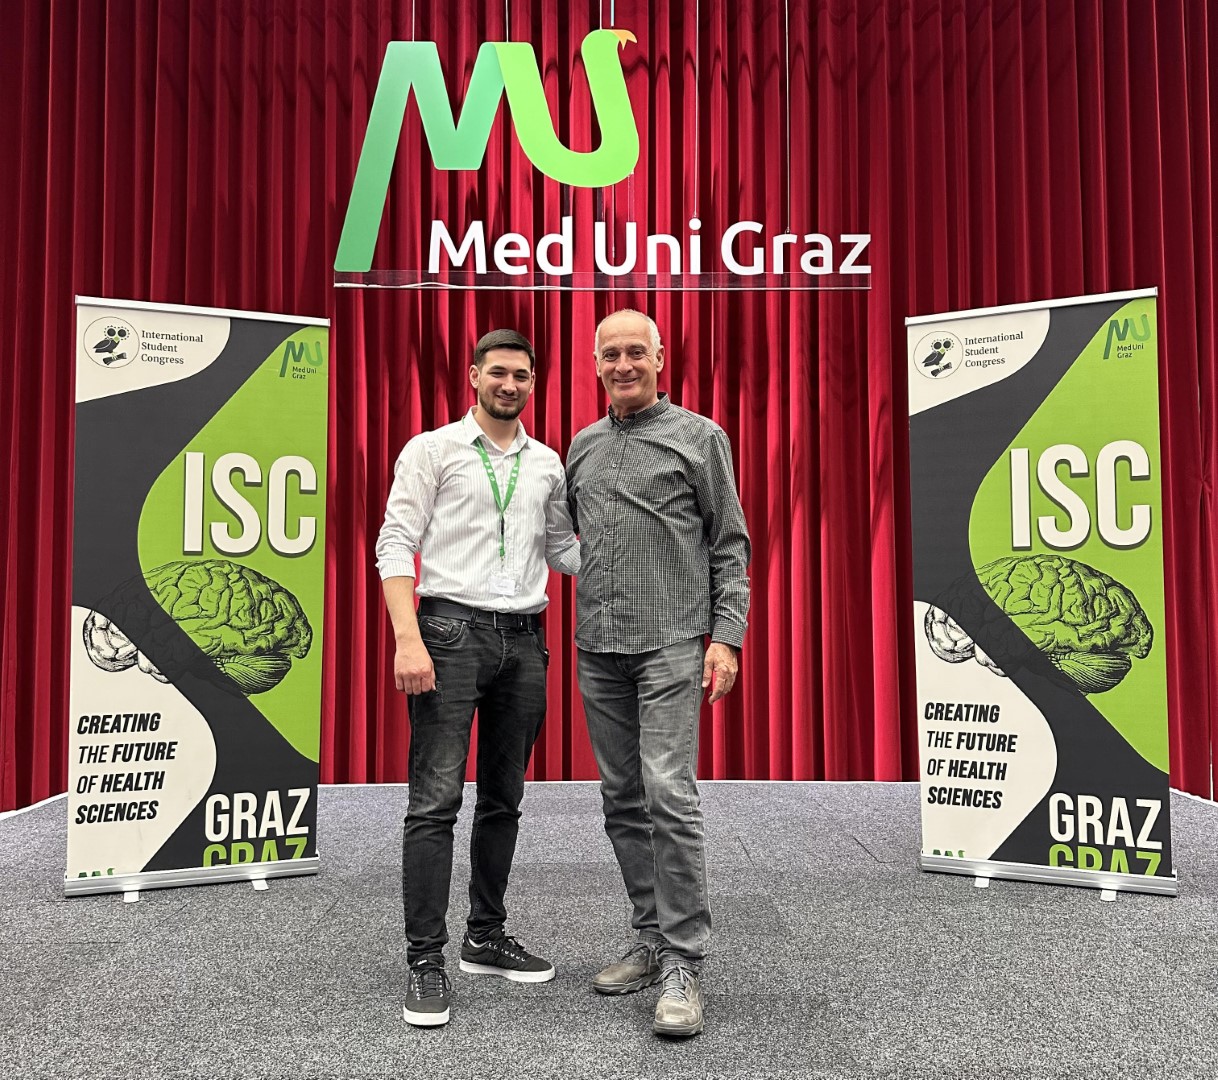 Profesori i UBT-së, Genc Demjaha, dhe studenti Arbër Bajgora, do të prezentojnë në Konferencën Ndërkombëtare në Medical University of Graz – Austri